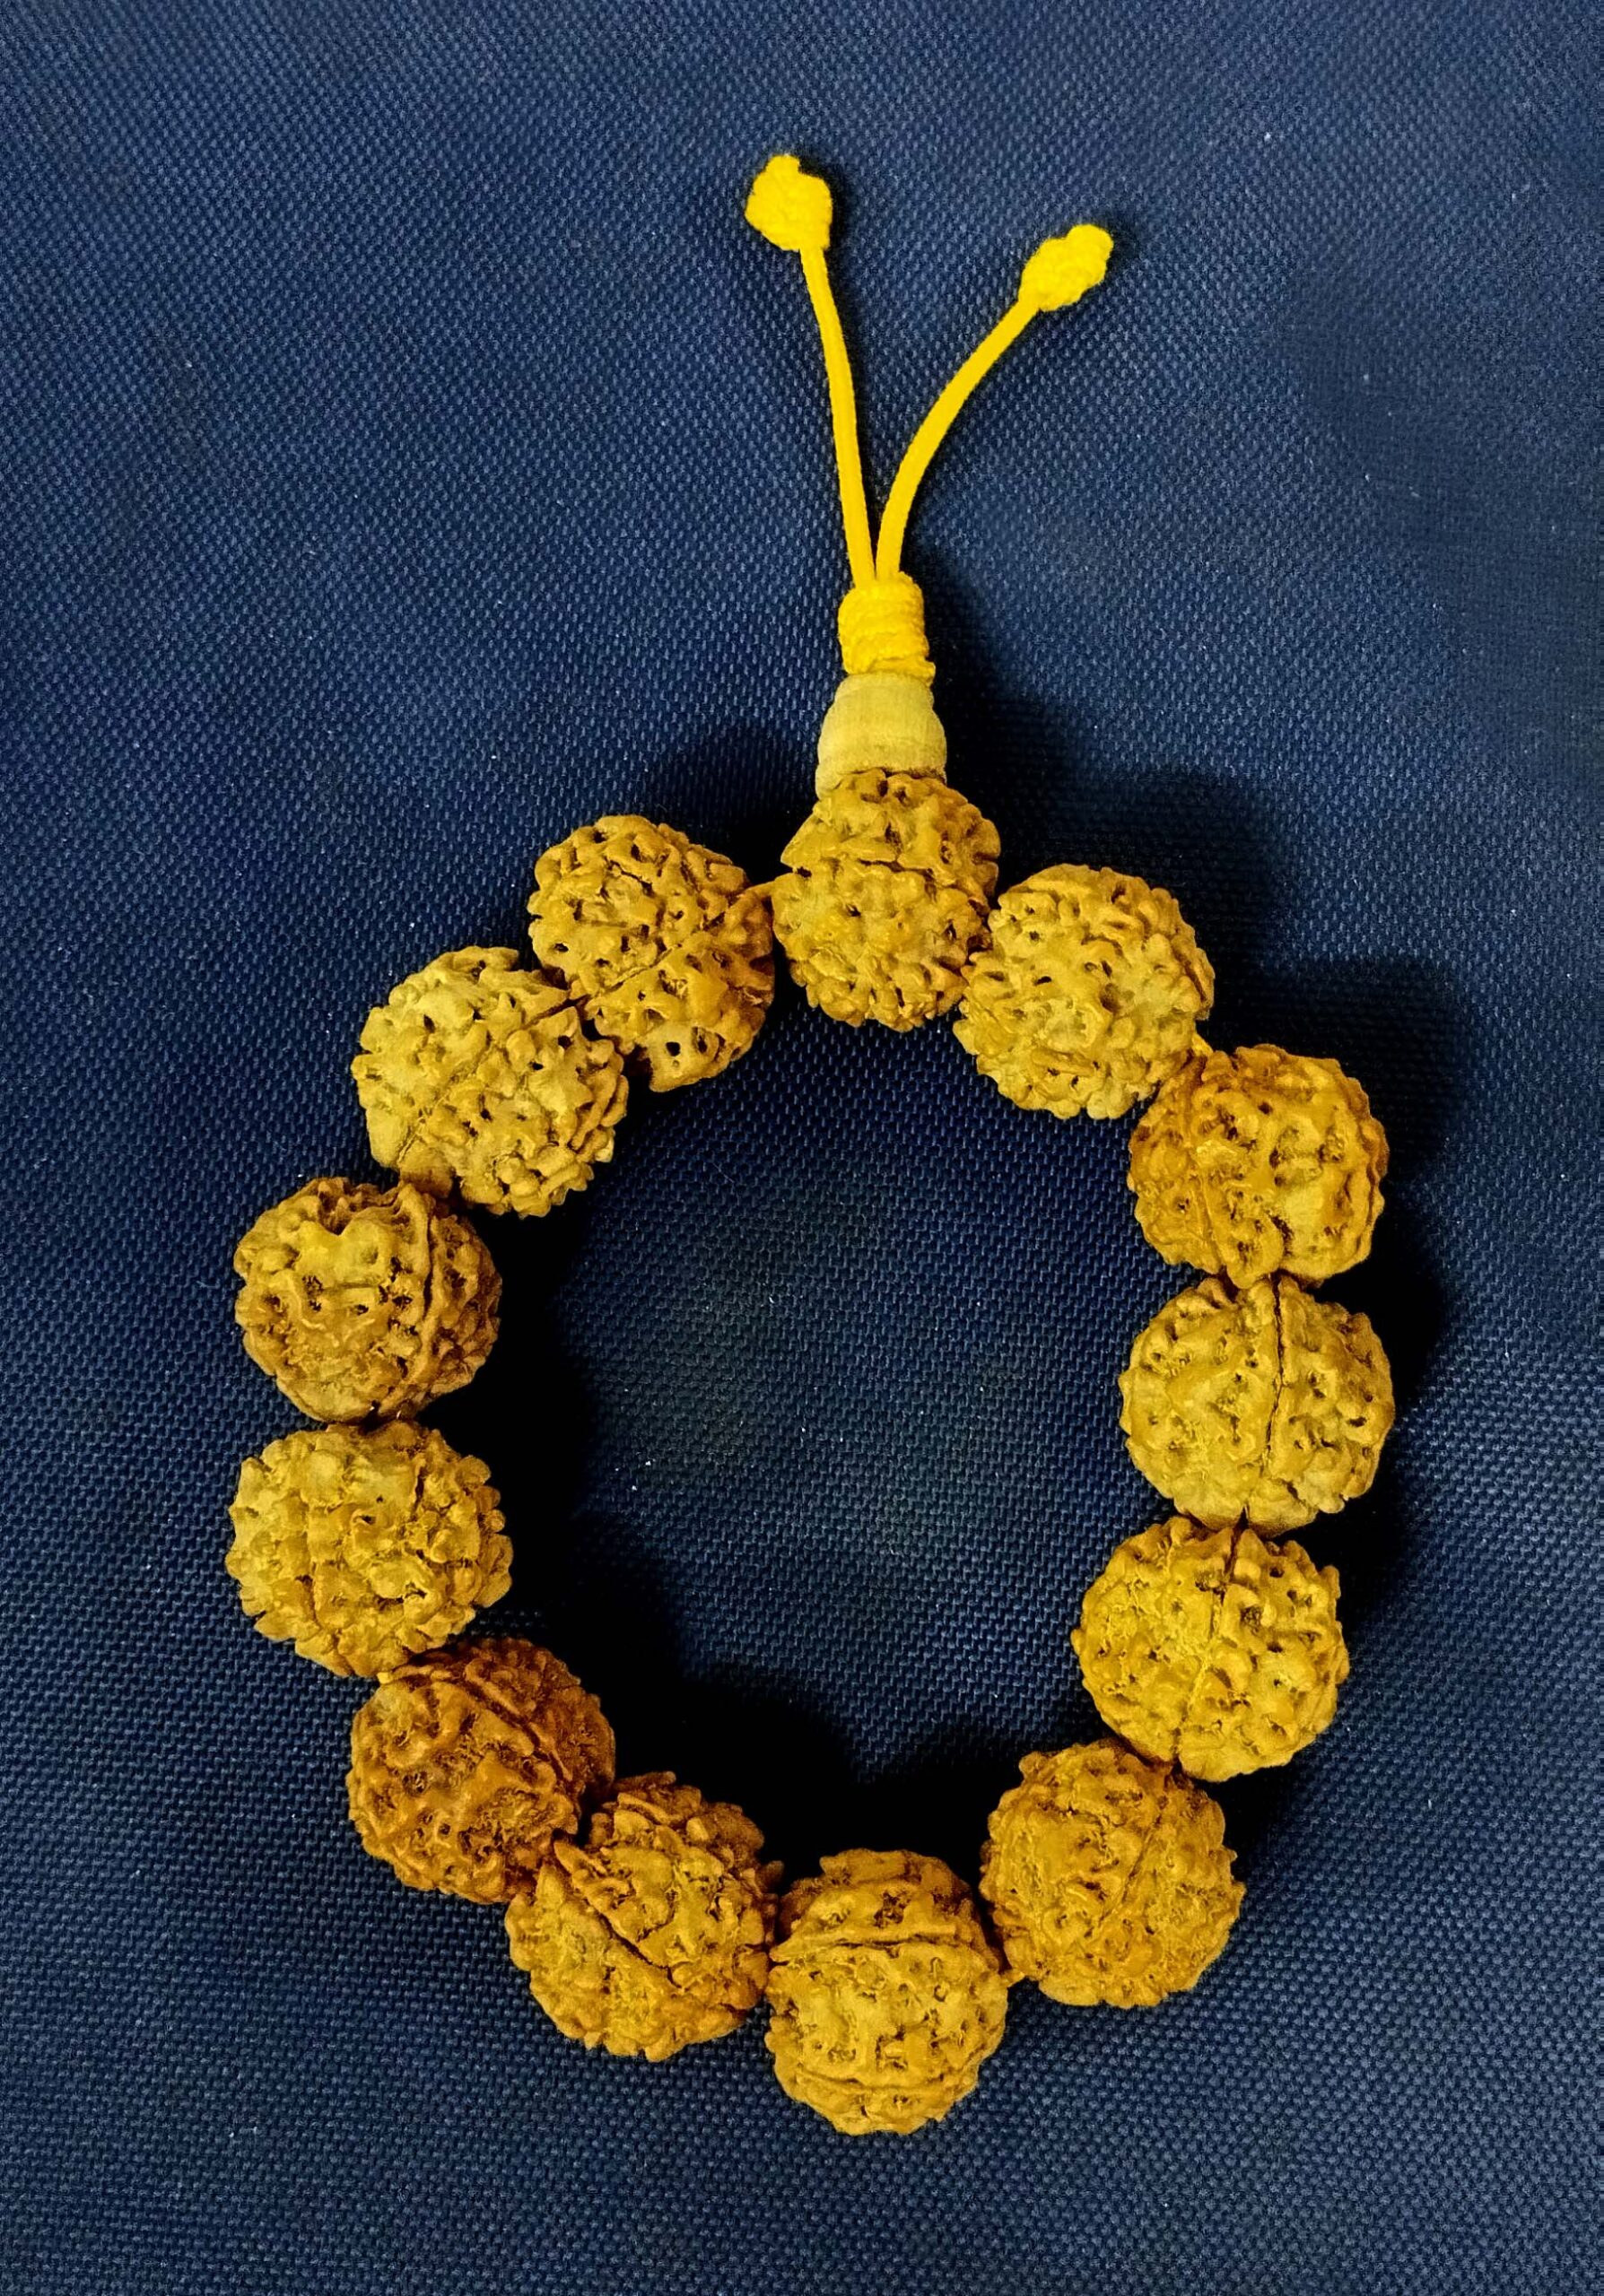 Gold Plated Modern Rudraksha Bracelet – Japam